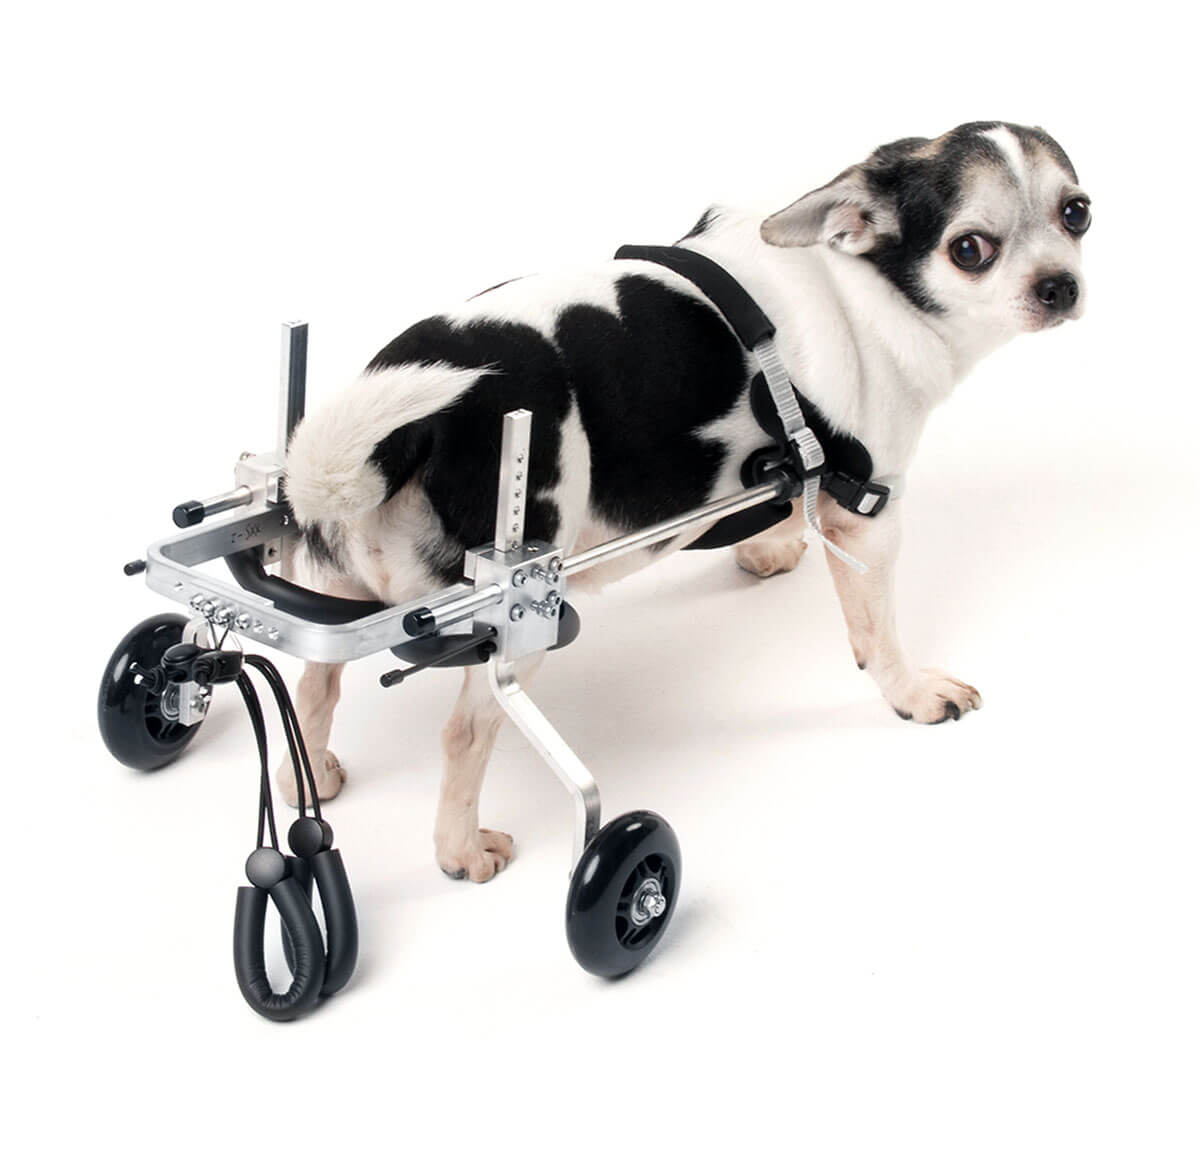 Регулируемая инвалидная коляска для собаки, кота